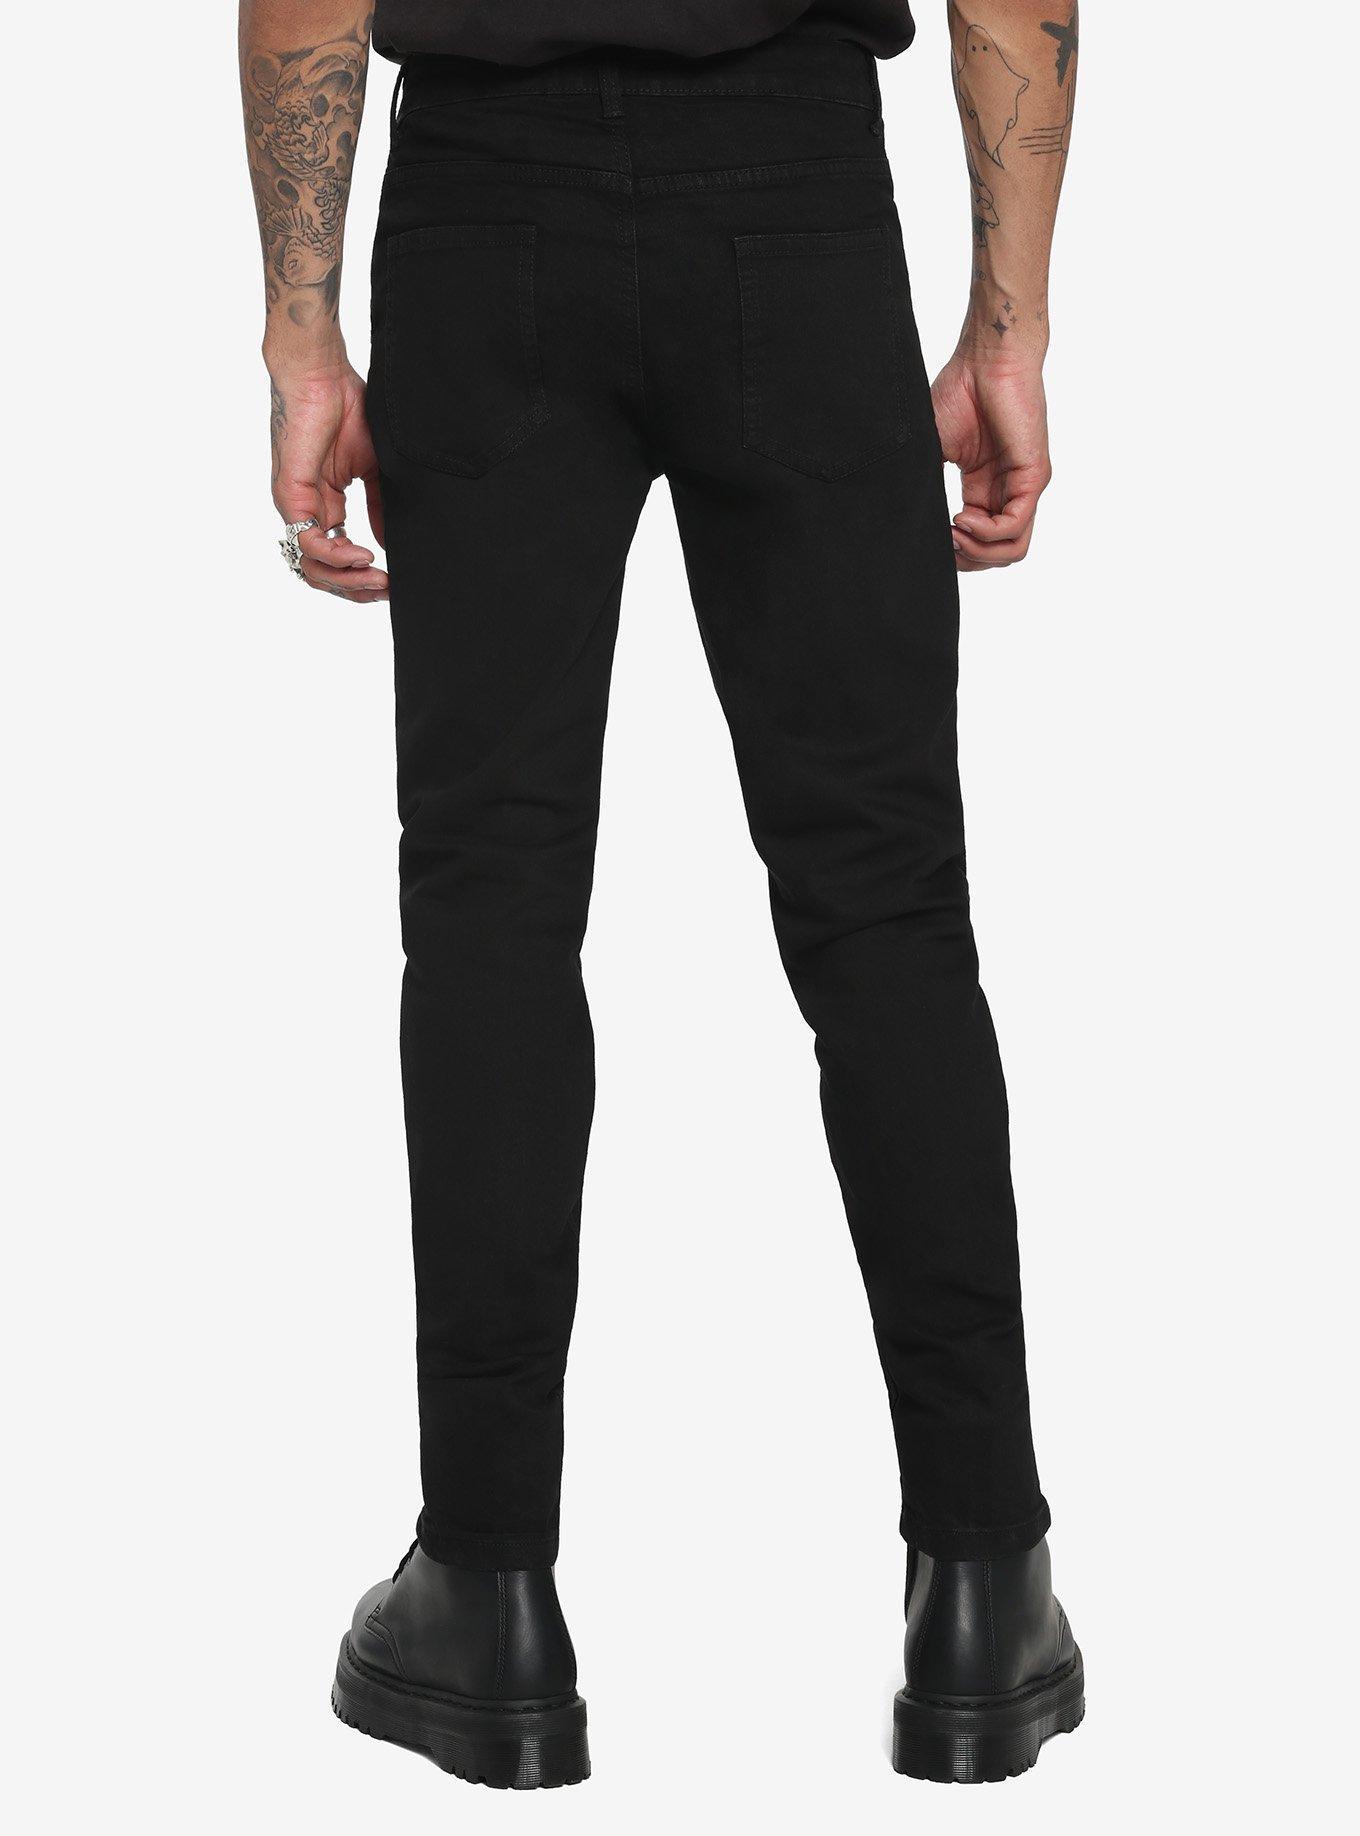 Black Zipper Skinny Jeans, BLACK, alternate